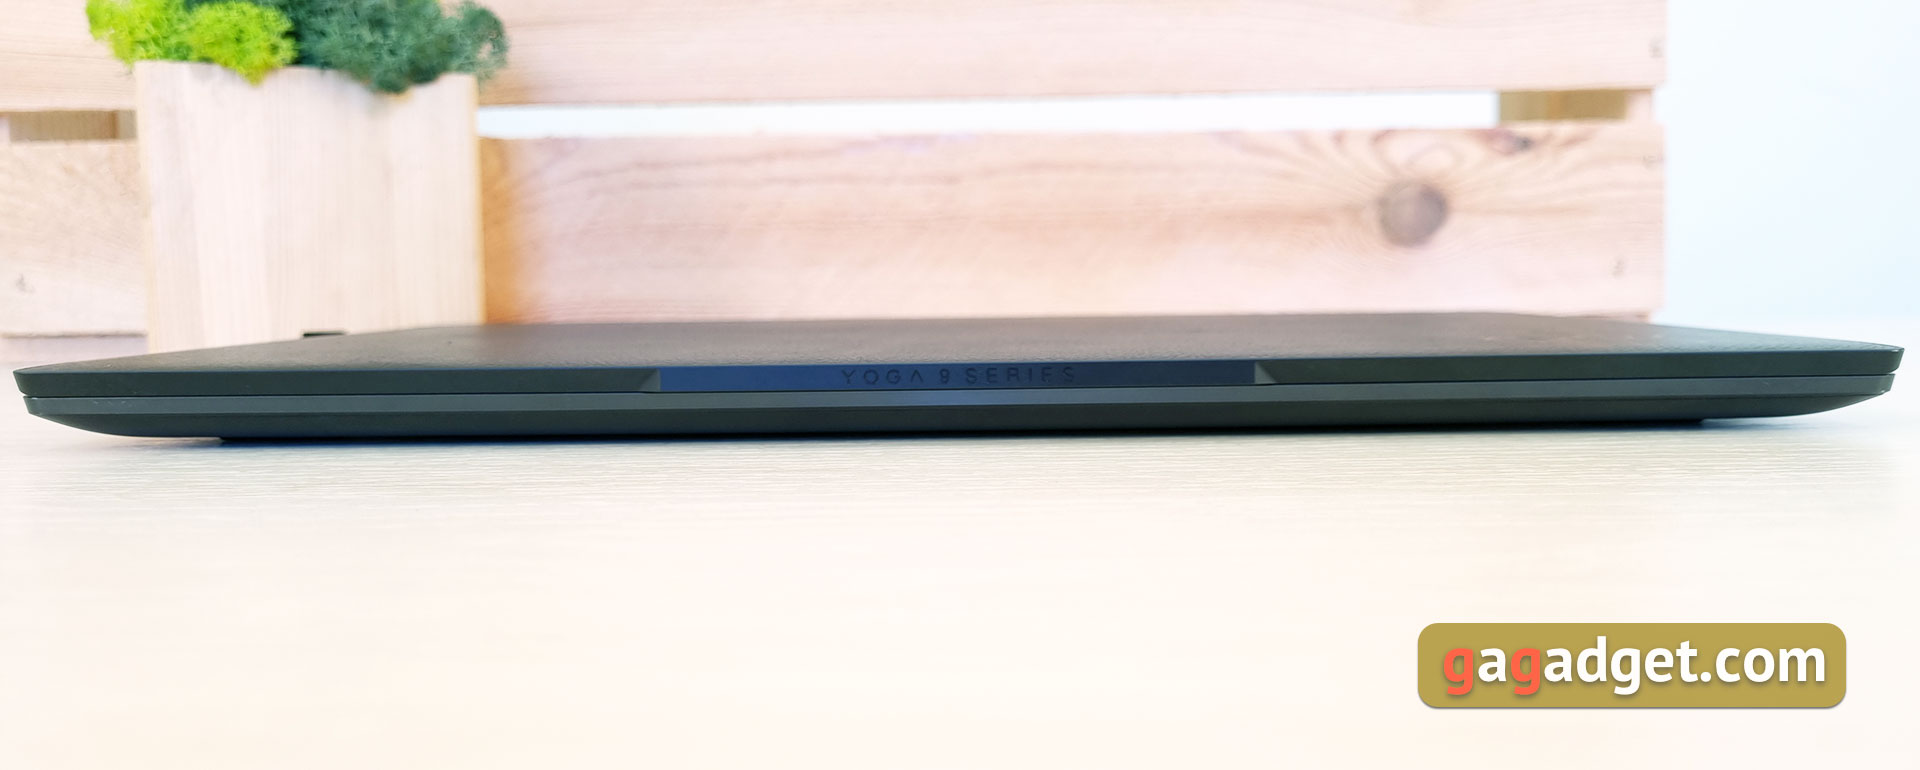 Lenovo Yoga Slim 9i Laptop Test-14